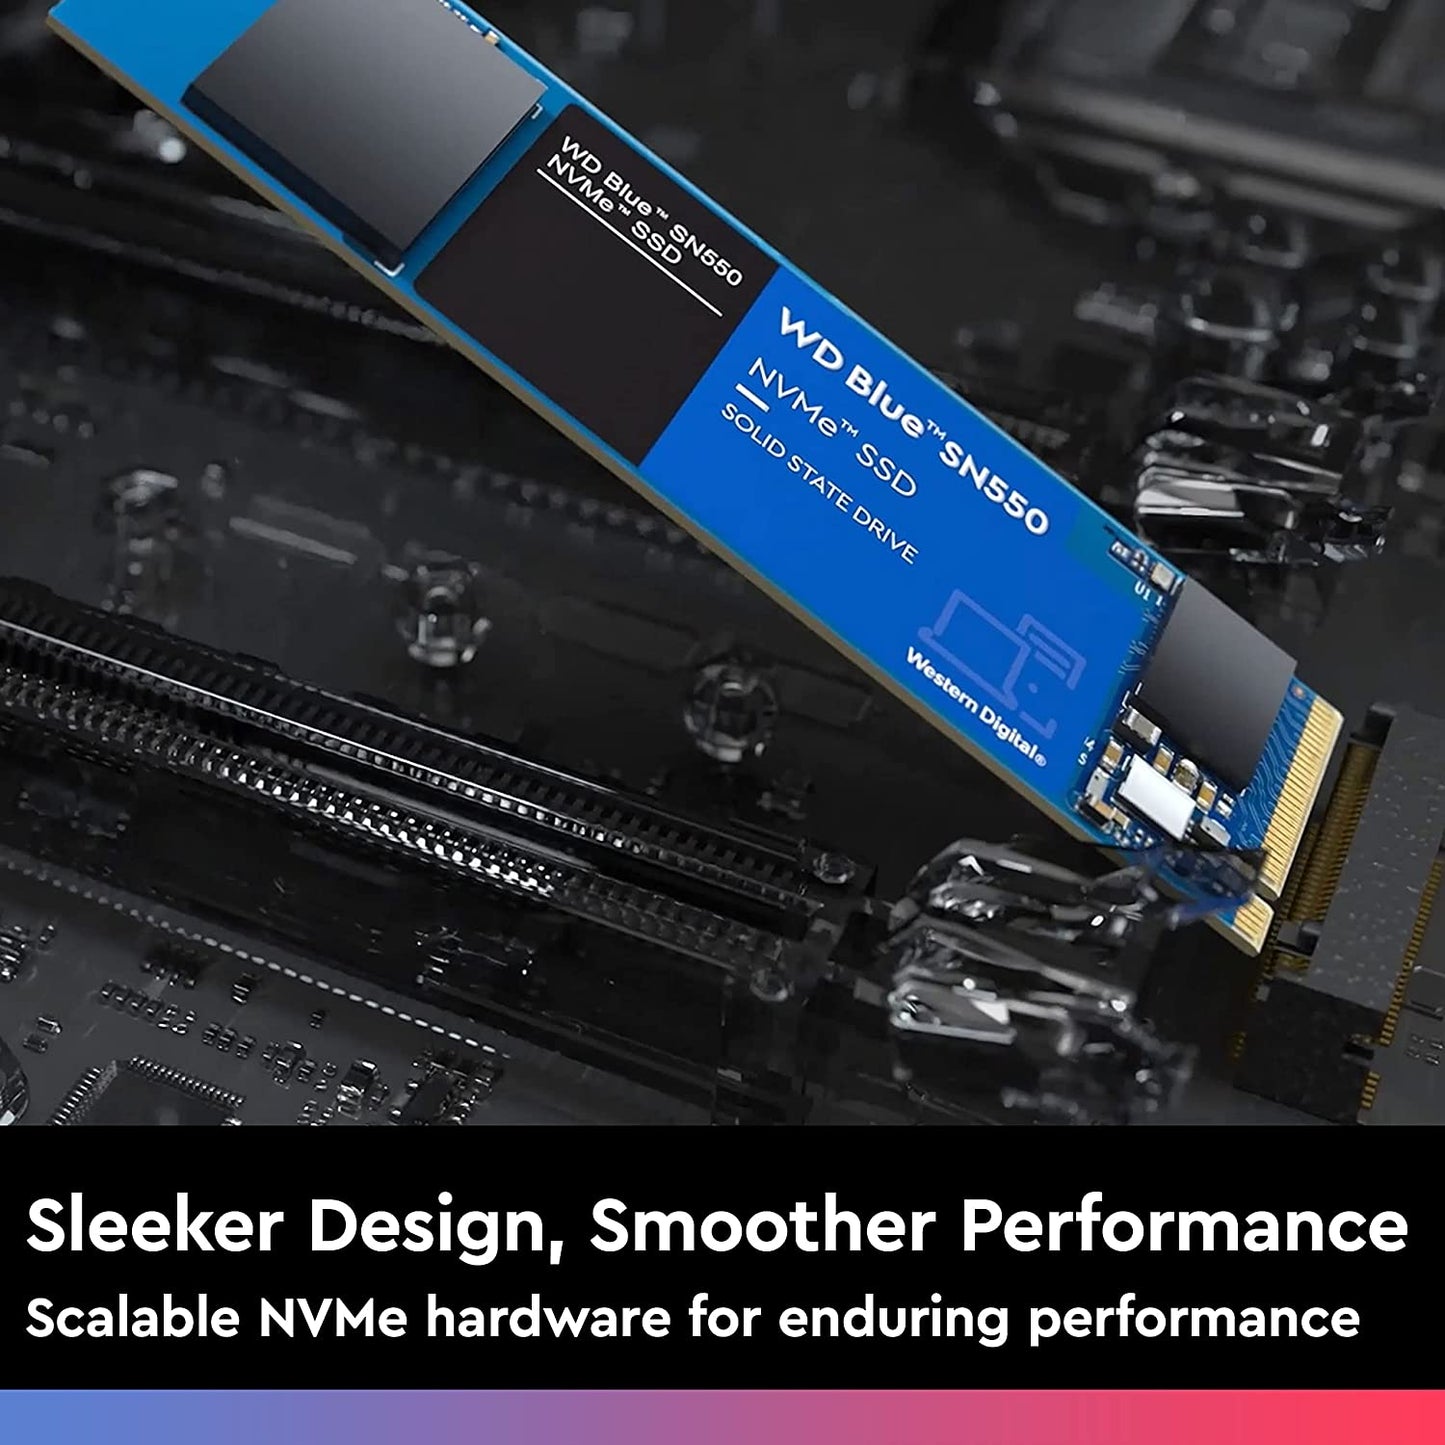 SSD-250-GB-WD-BLUE-NVME-M.2-SN570